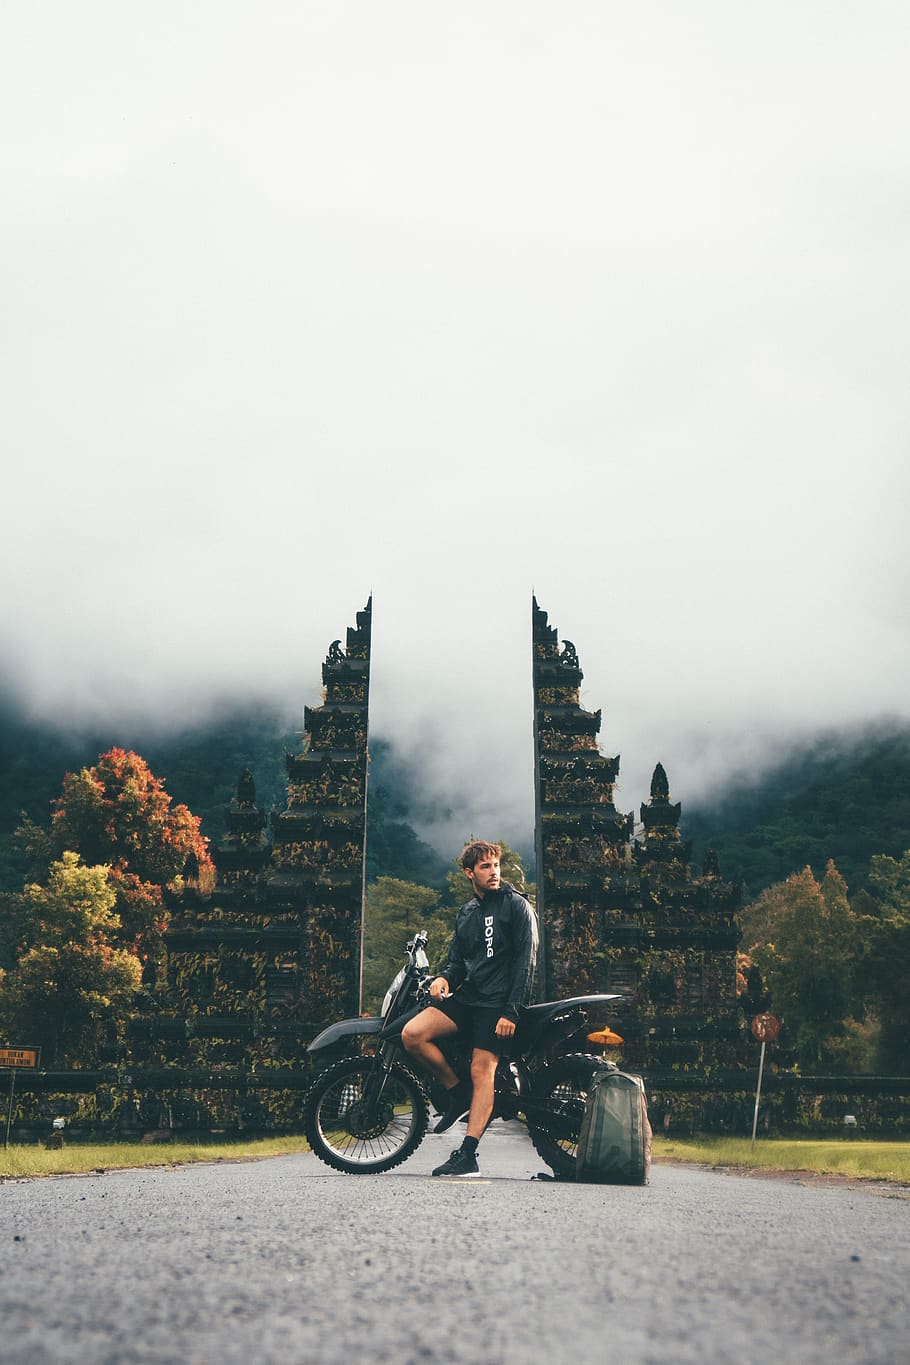 homem, motocicleta, aventura, névoa, ruínas, construção, transporte, bicicleta, mochila, estrada